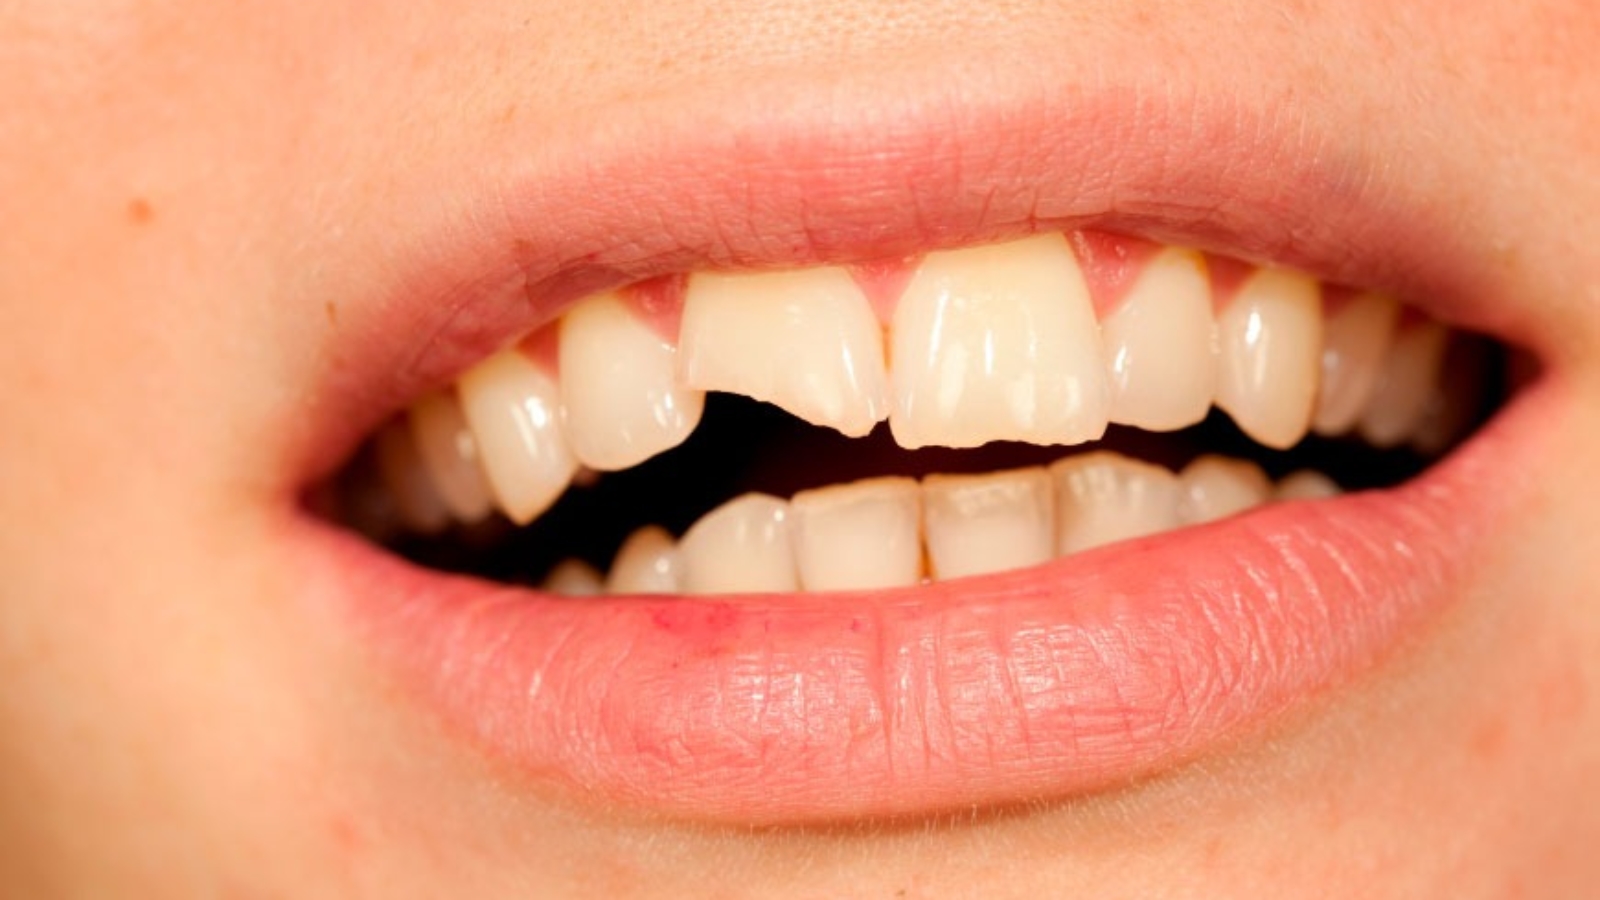 Dentes fracos e quebradiços (2)